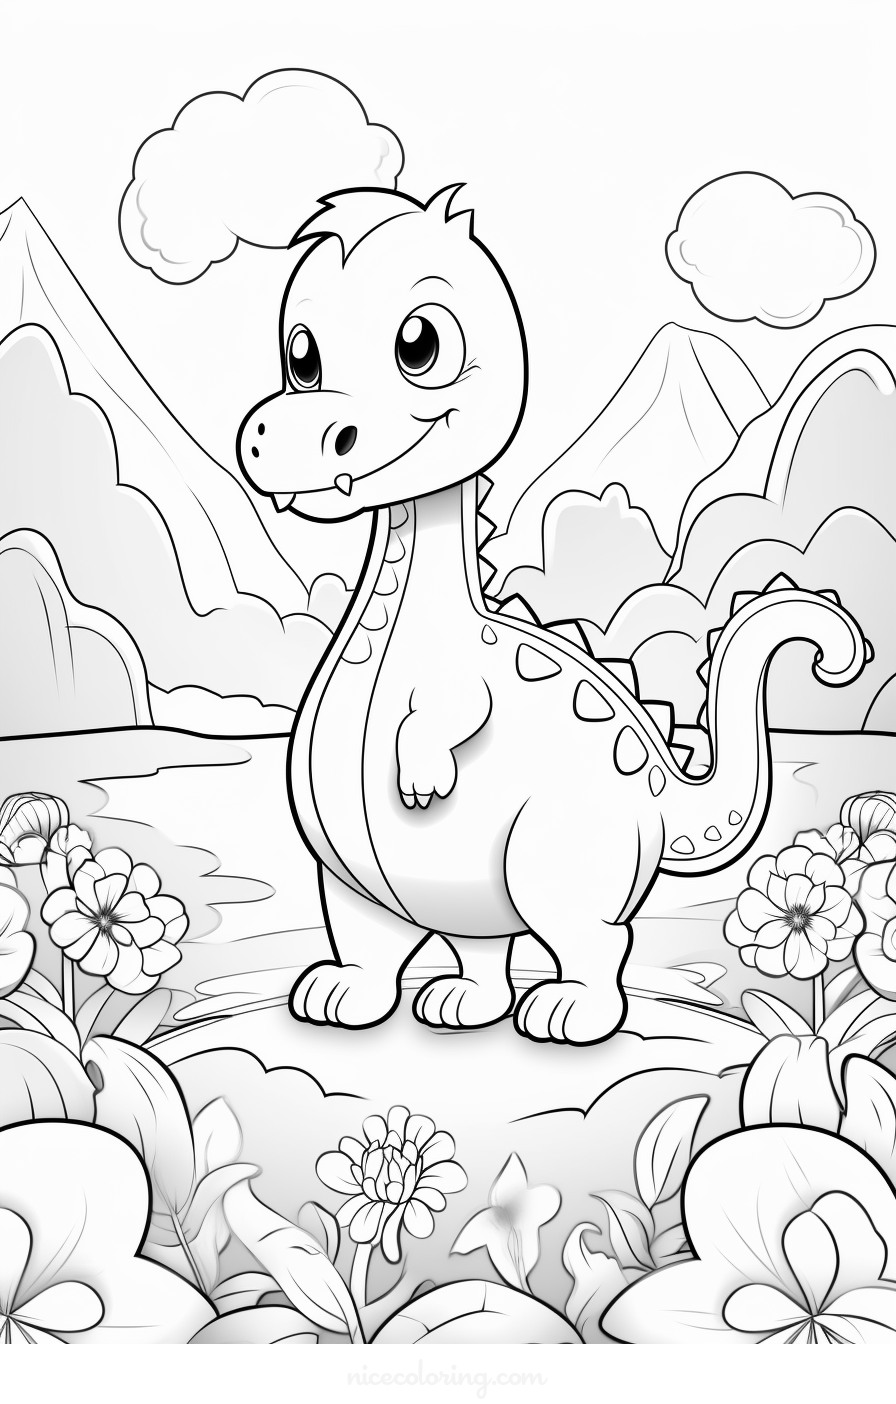 Une scène détaillée de dinosaures à colorier.